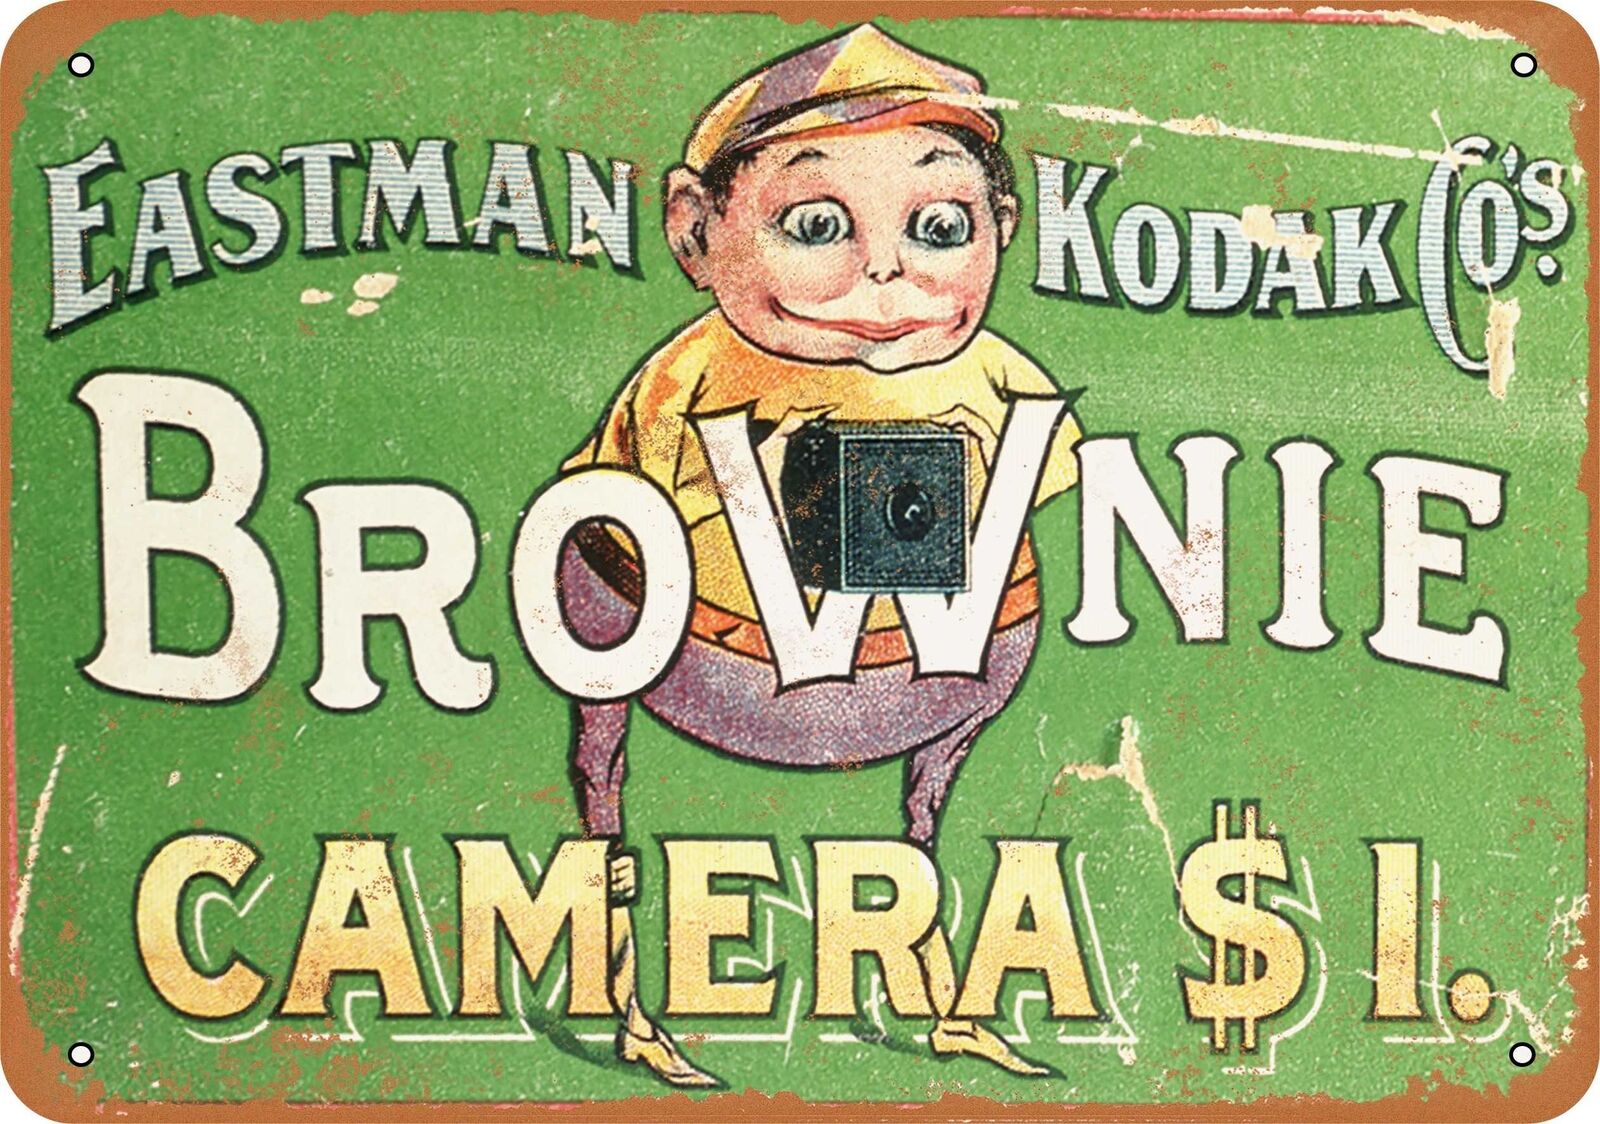 Metal Sign - 1904 Kodak Brownie Cameras - Vintage Look Reproduction